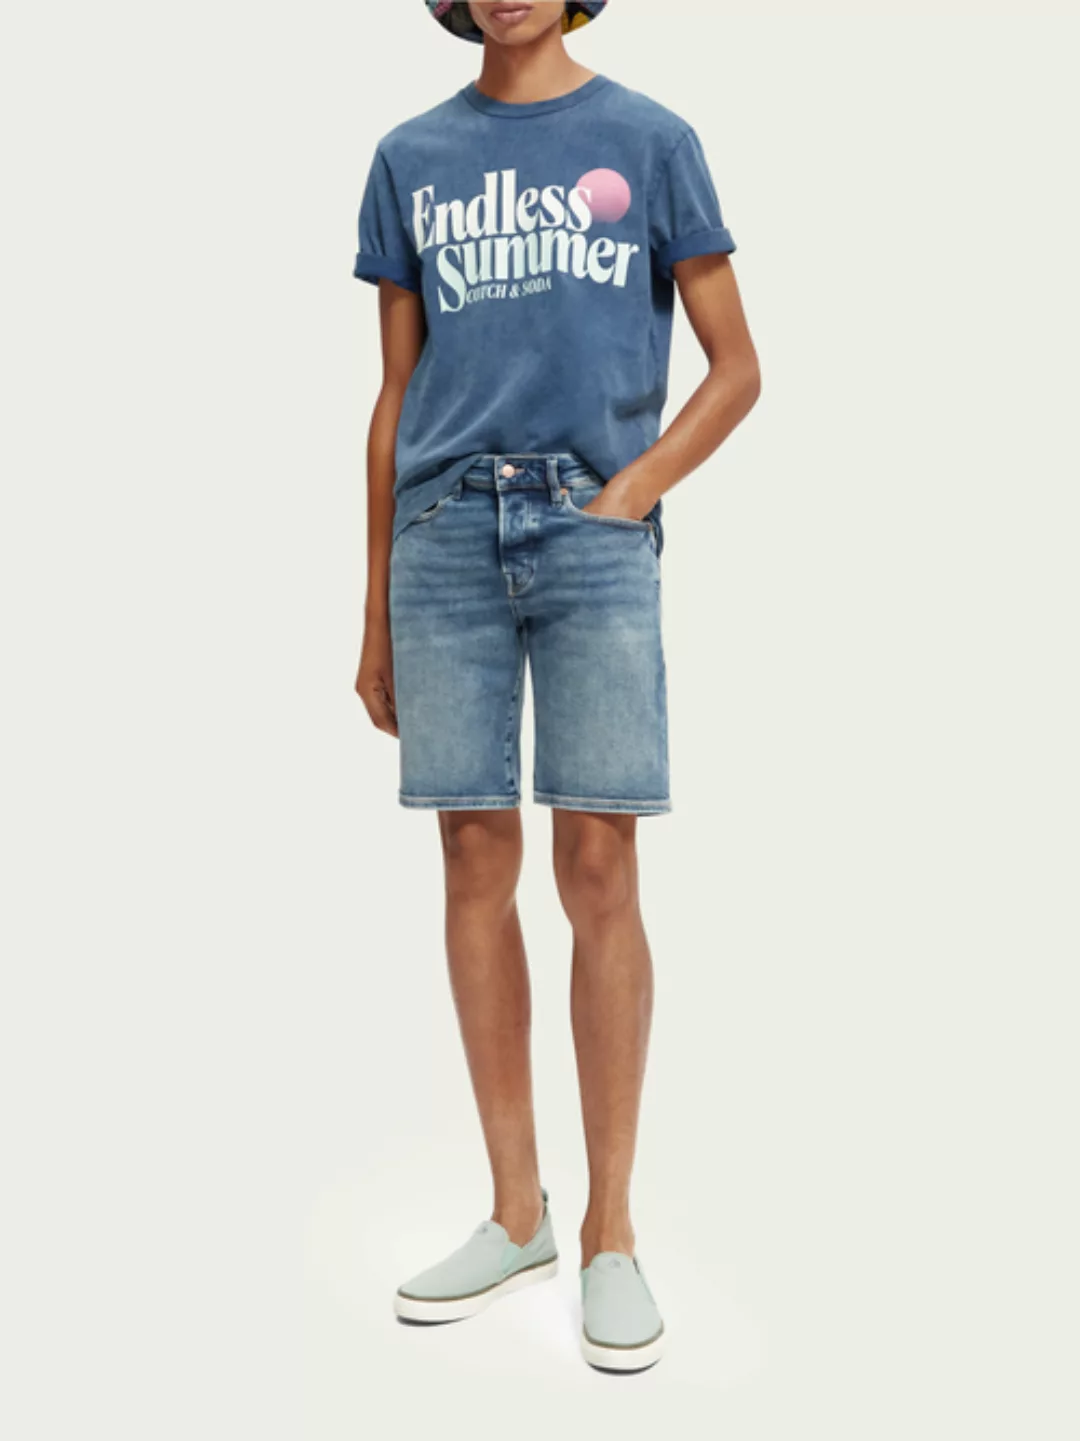 Scotch & Soda The Ralston Shorts im Regular Slim Fit – Everywhere Blue günstig online kaufen